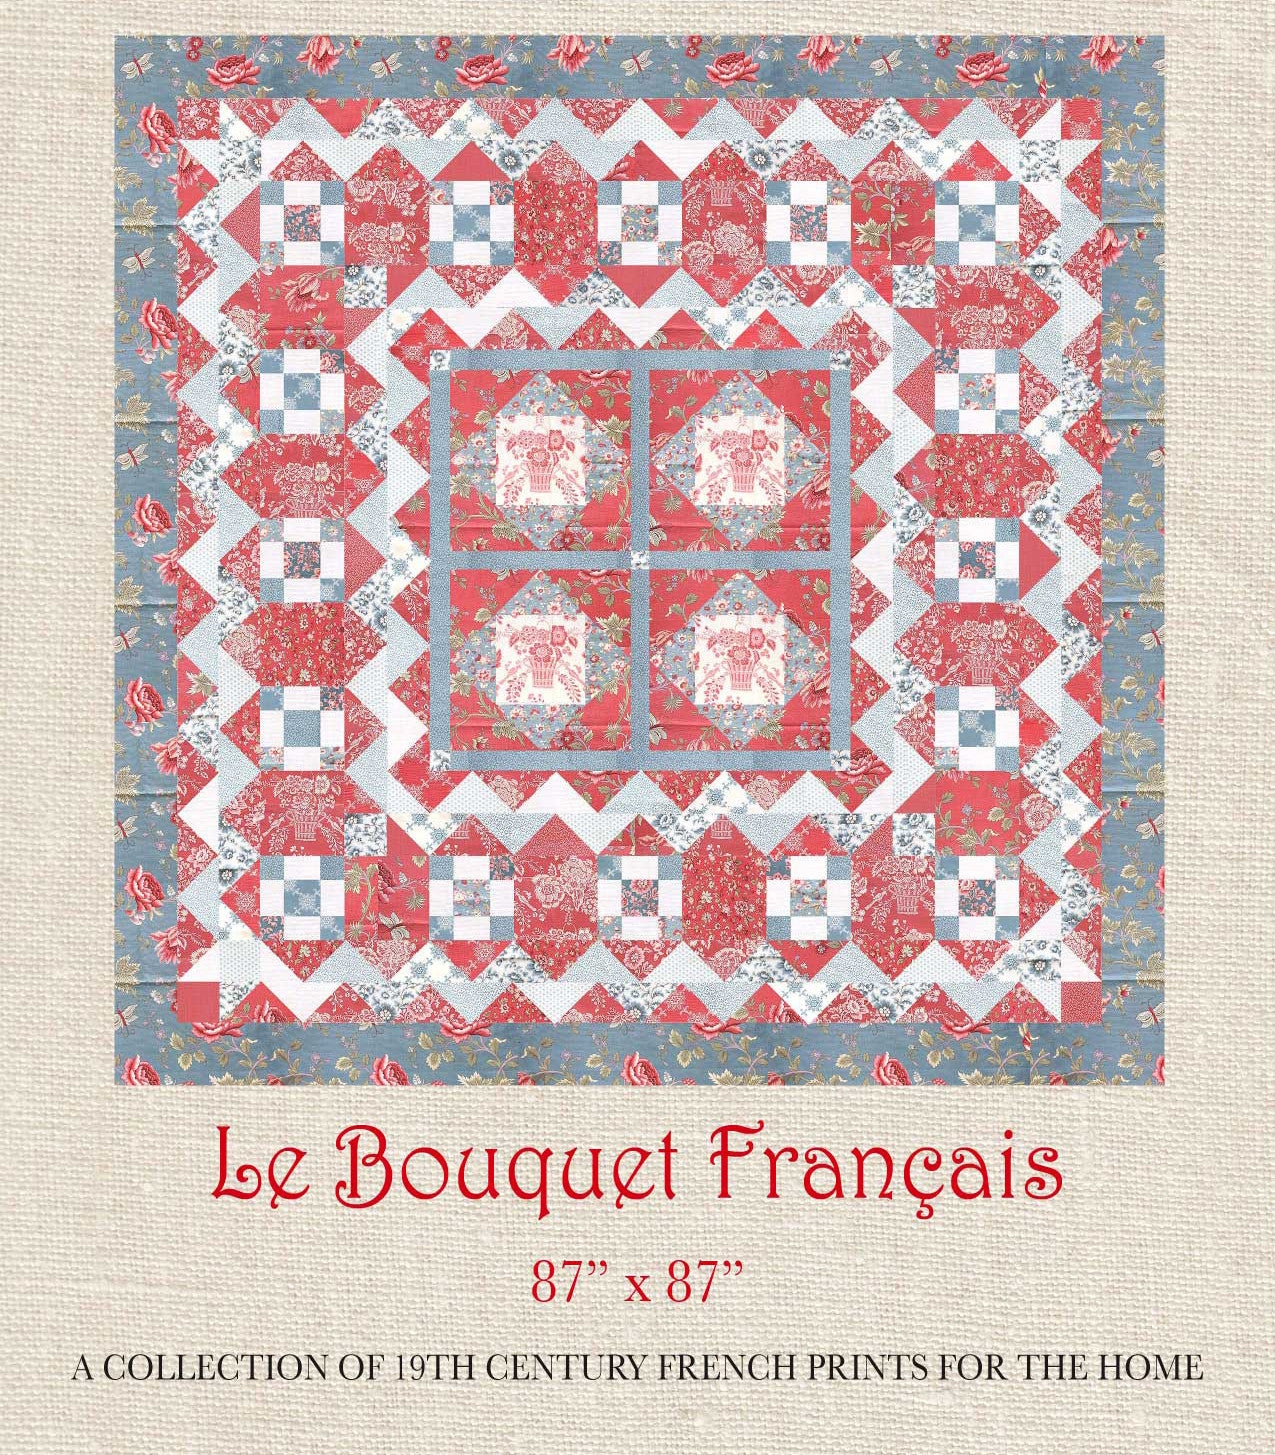 Le Bouquet Francais - Bouquet Francais Quilt Pattern